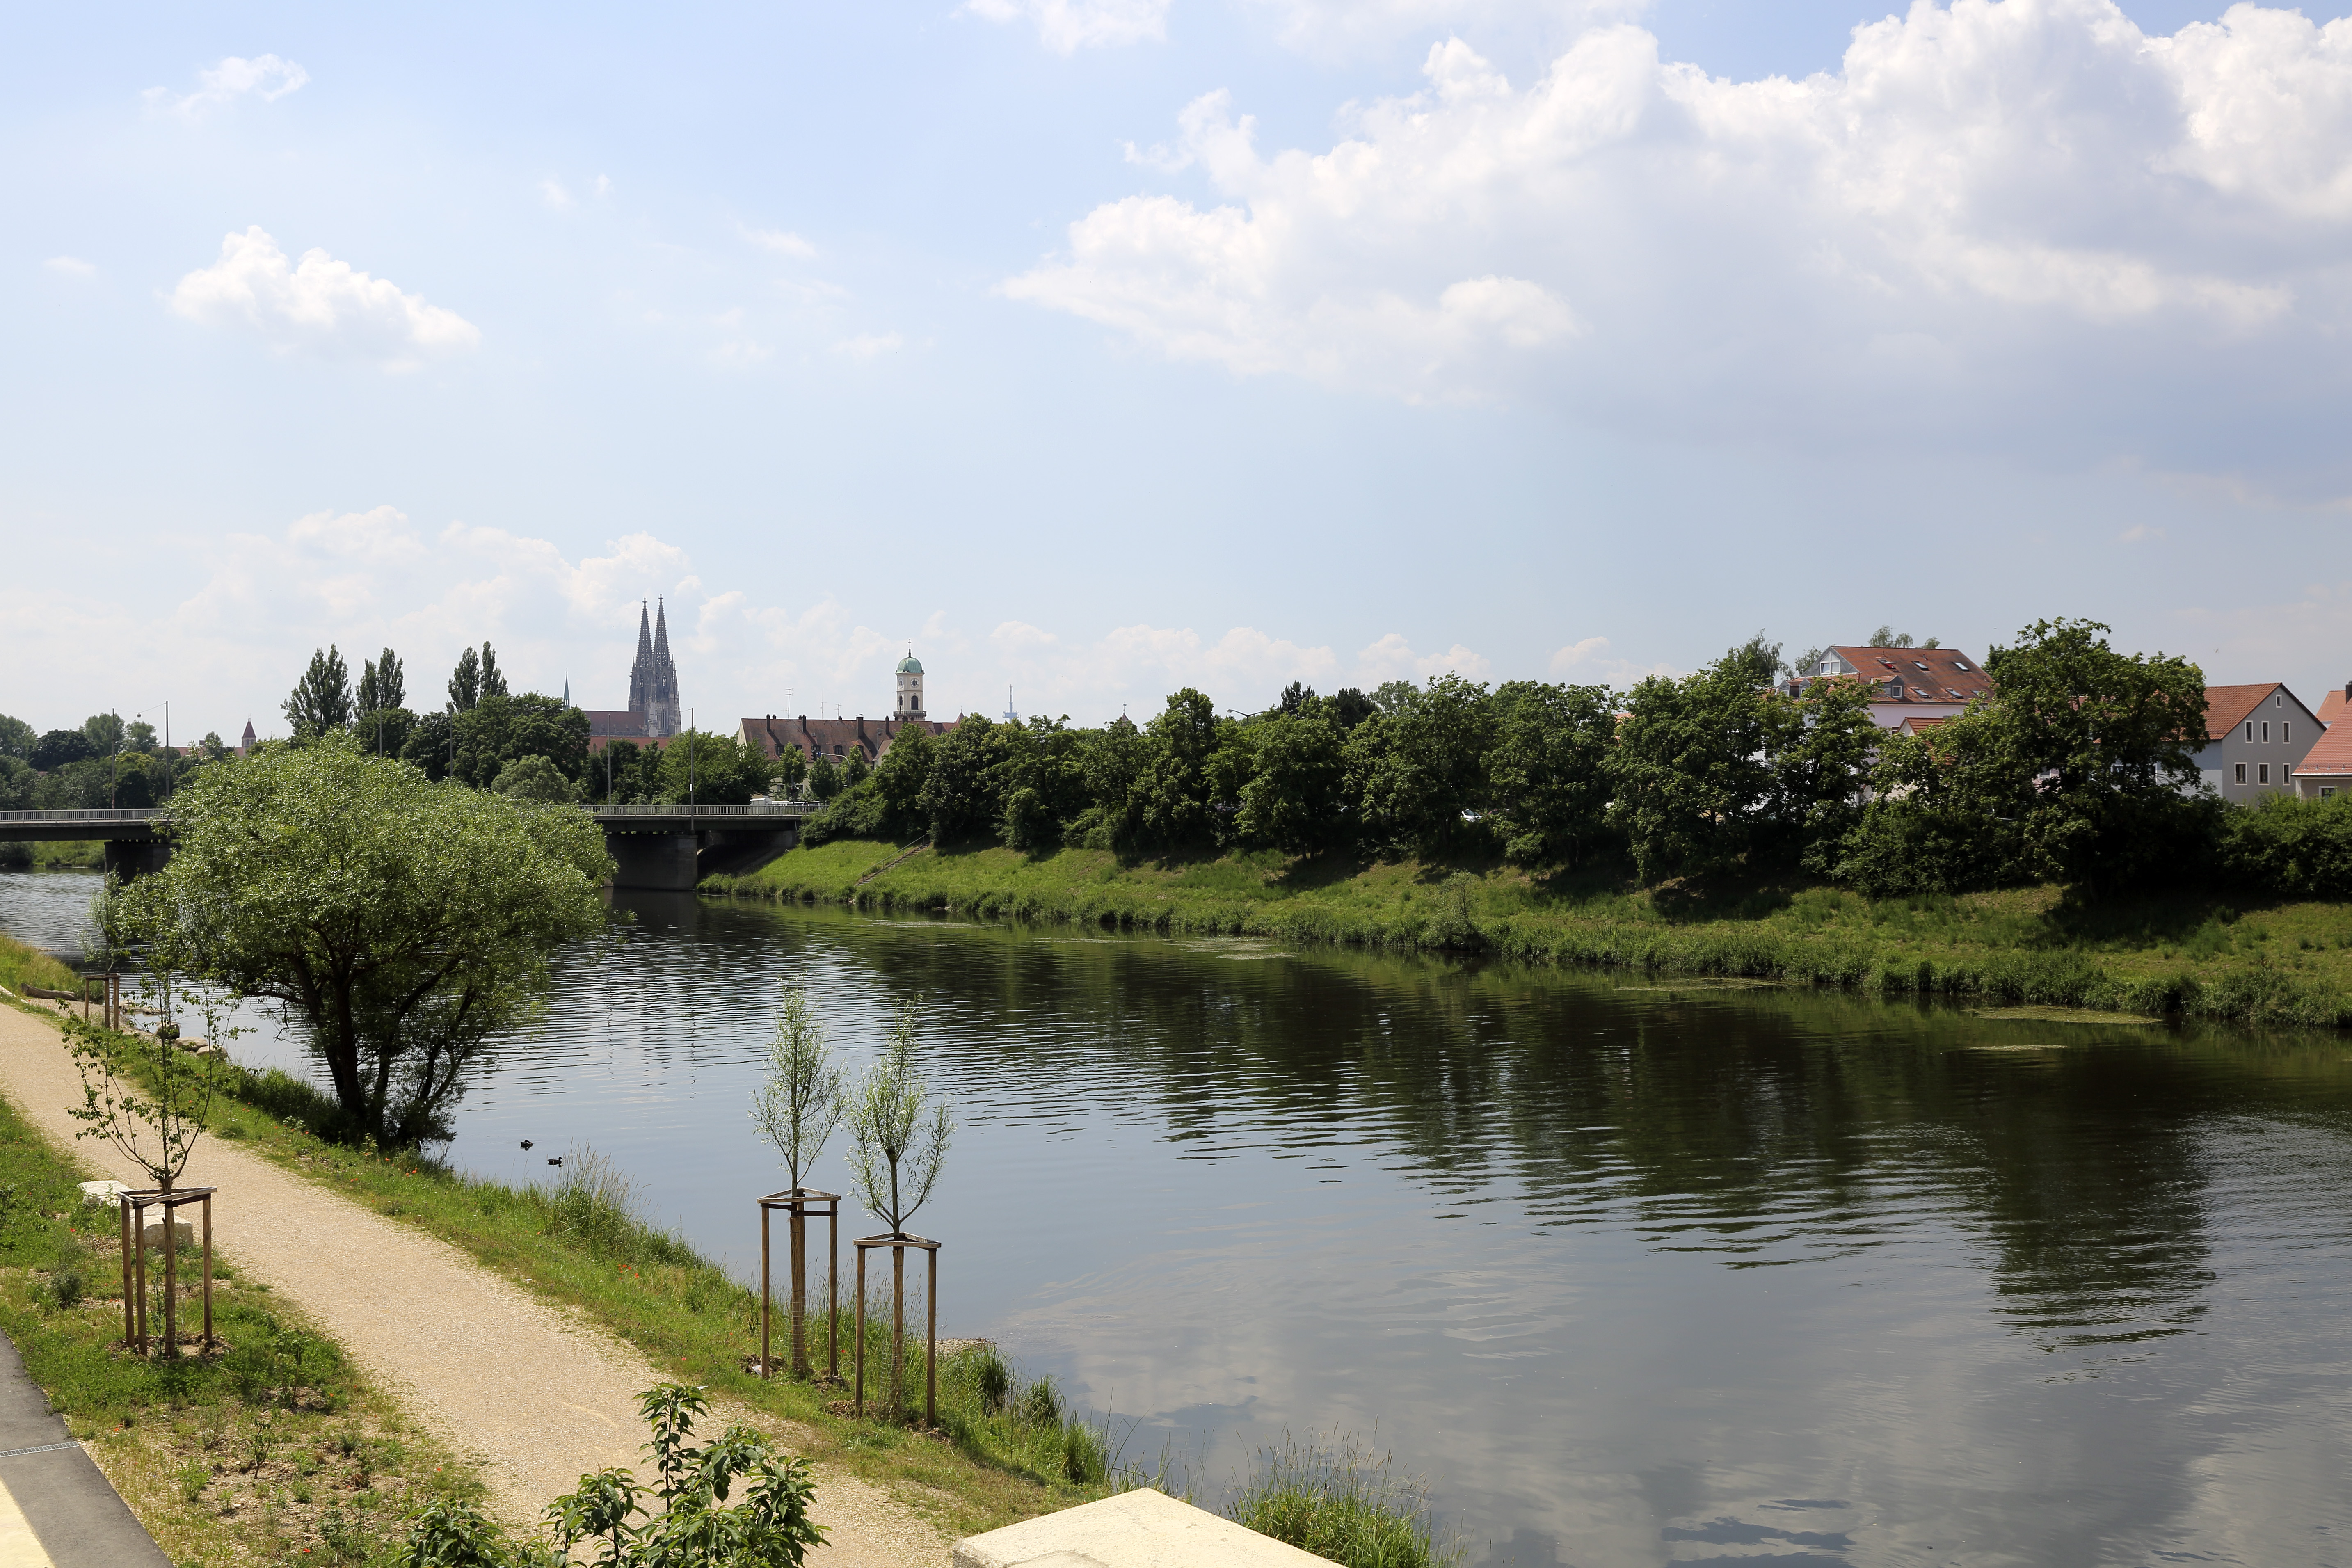 Diagonal im Bild verläuft der Fluss Regen, links davon der Uferweg mit neu gepflanzen Bäumen, das rechte Ufer mit Bewuchs und Bebauung. Im Hintergrund ist die Frankenbrücke, der Dom und der Kirchturm von St. Mang zu sehen.